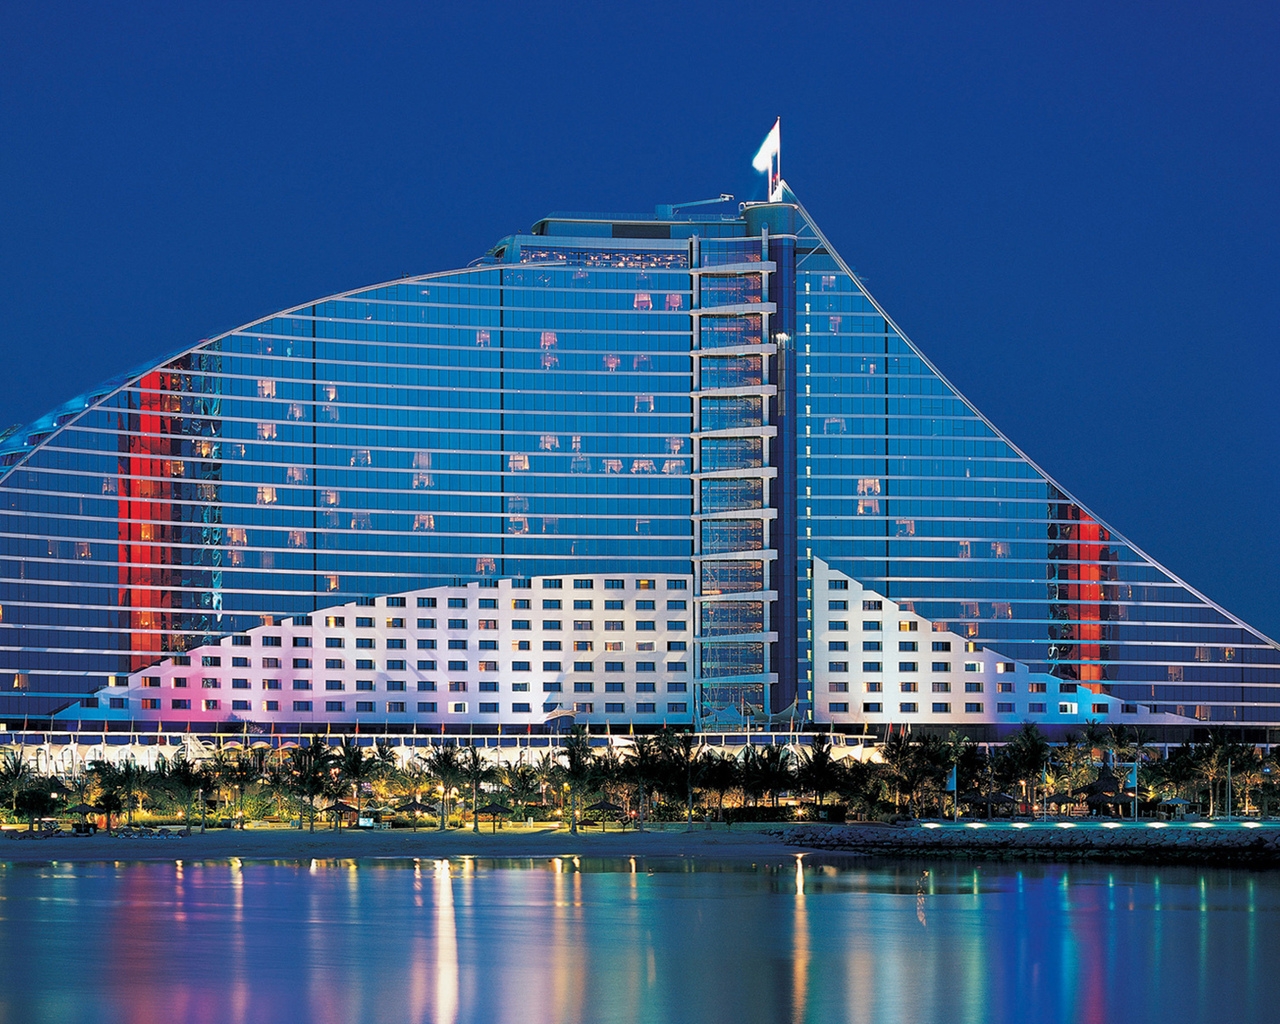 Jumeirah Beach Hotel Dubai for 1280 x 1024 resolution